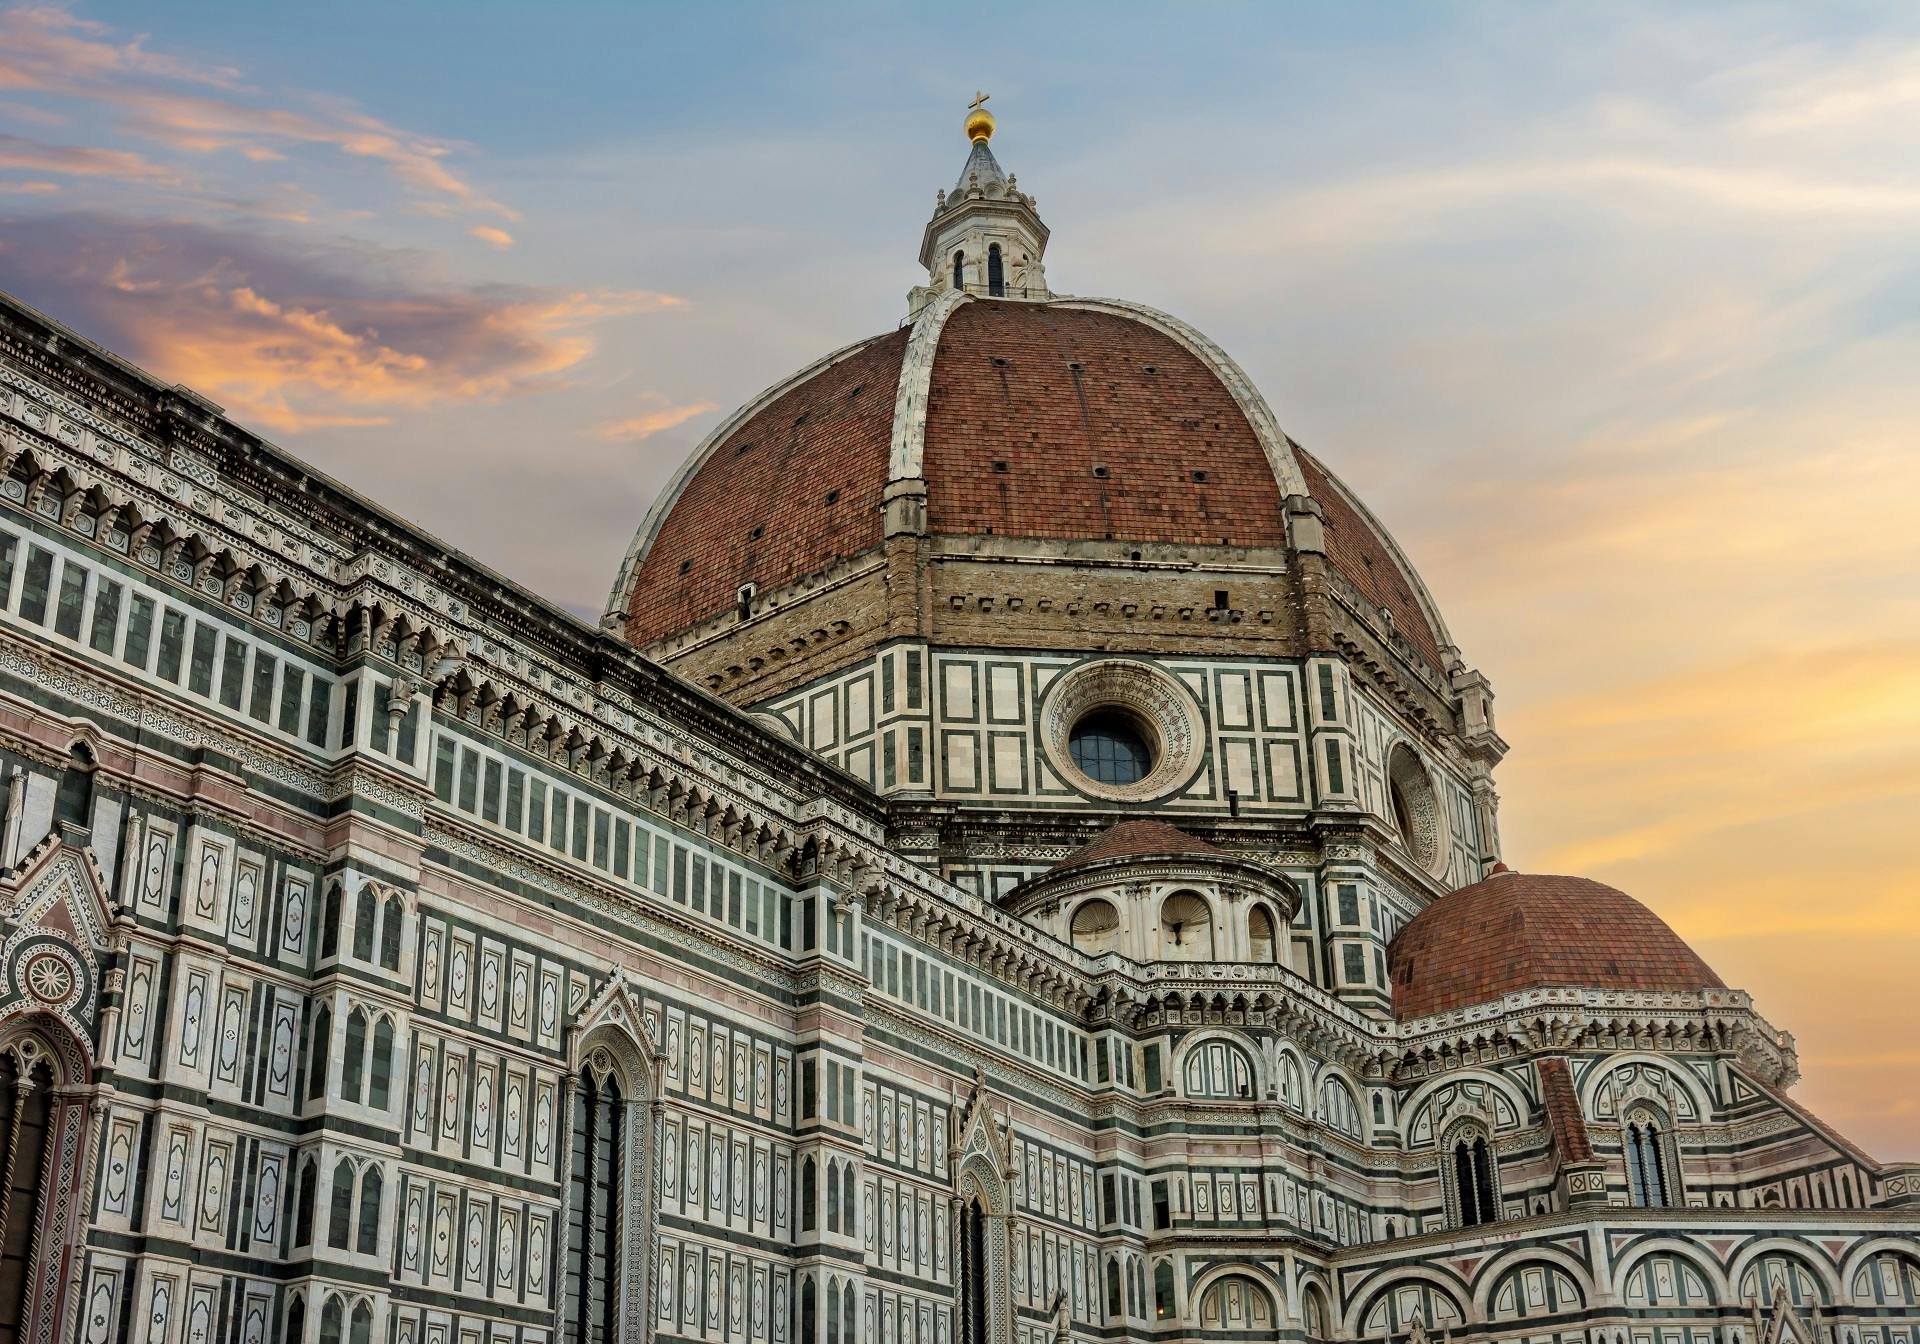 Visite exclusive du Duomo de Florence après les heures d'ouverture, y compris les terrasses privées